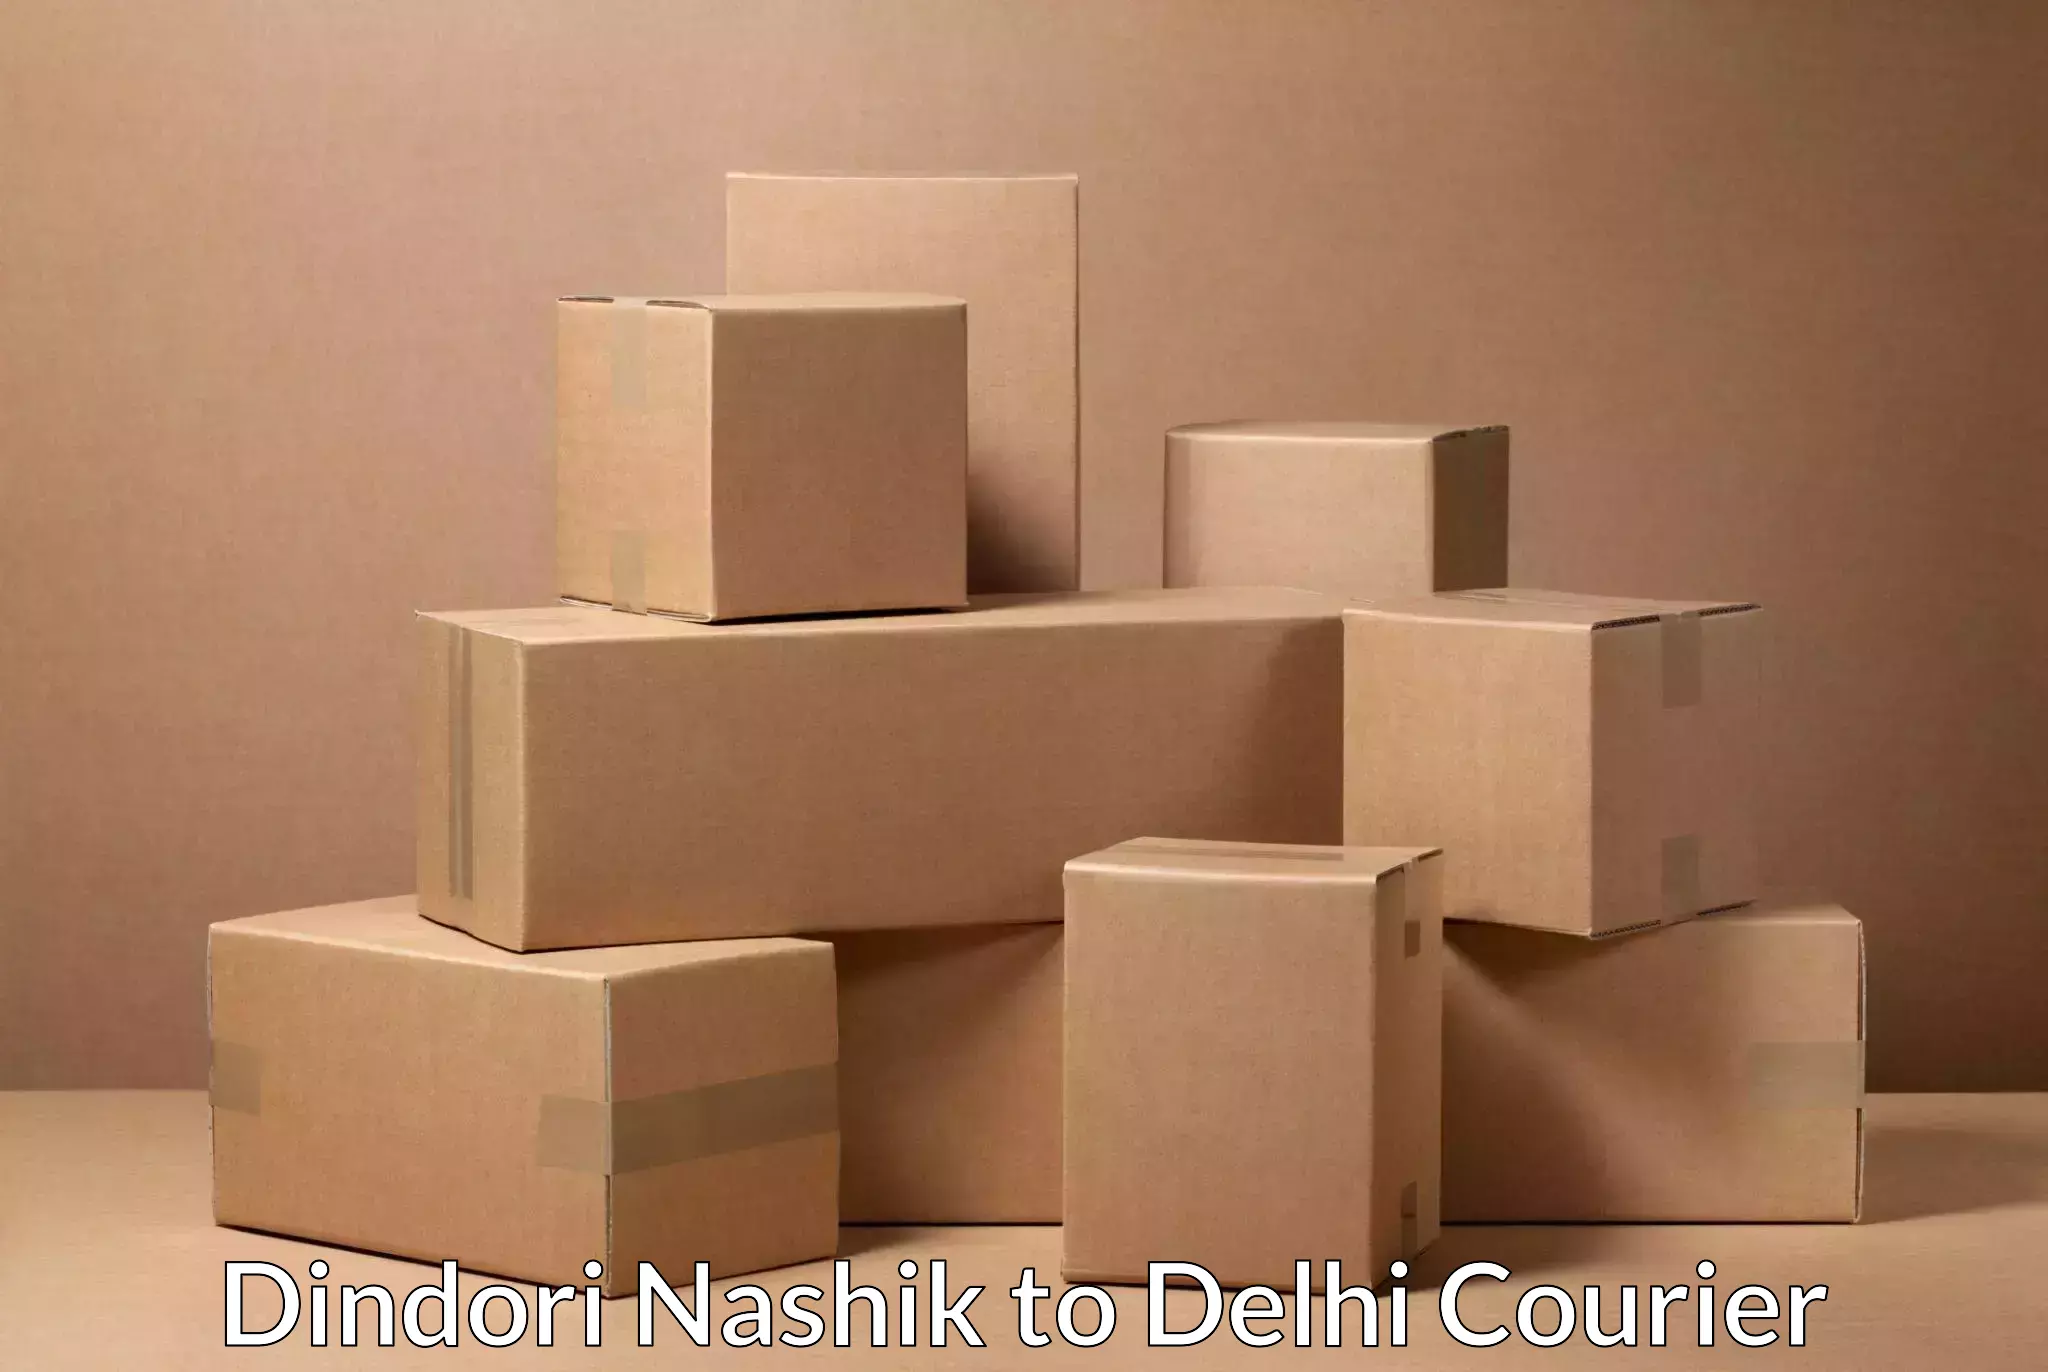 Supply chain delivery Dindori Nashik to Krishna Nagar